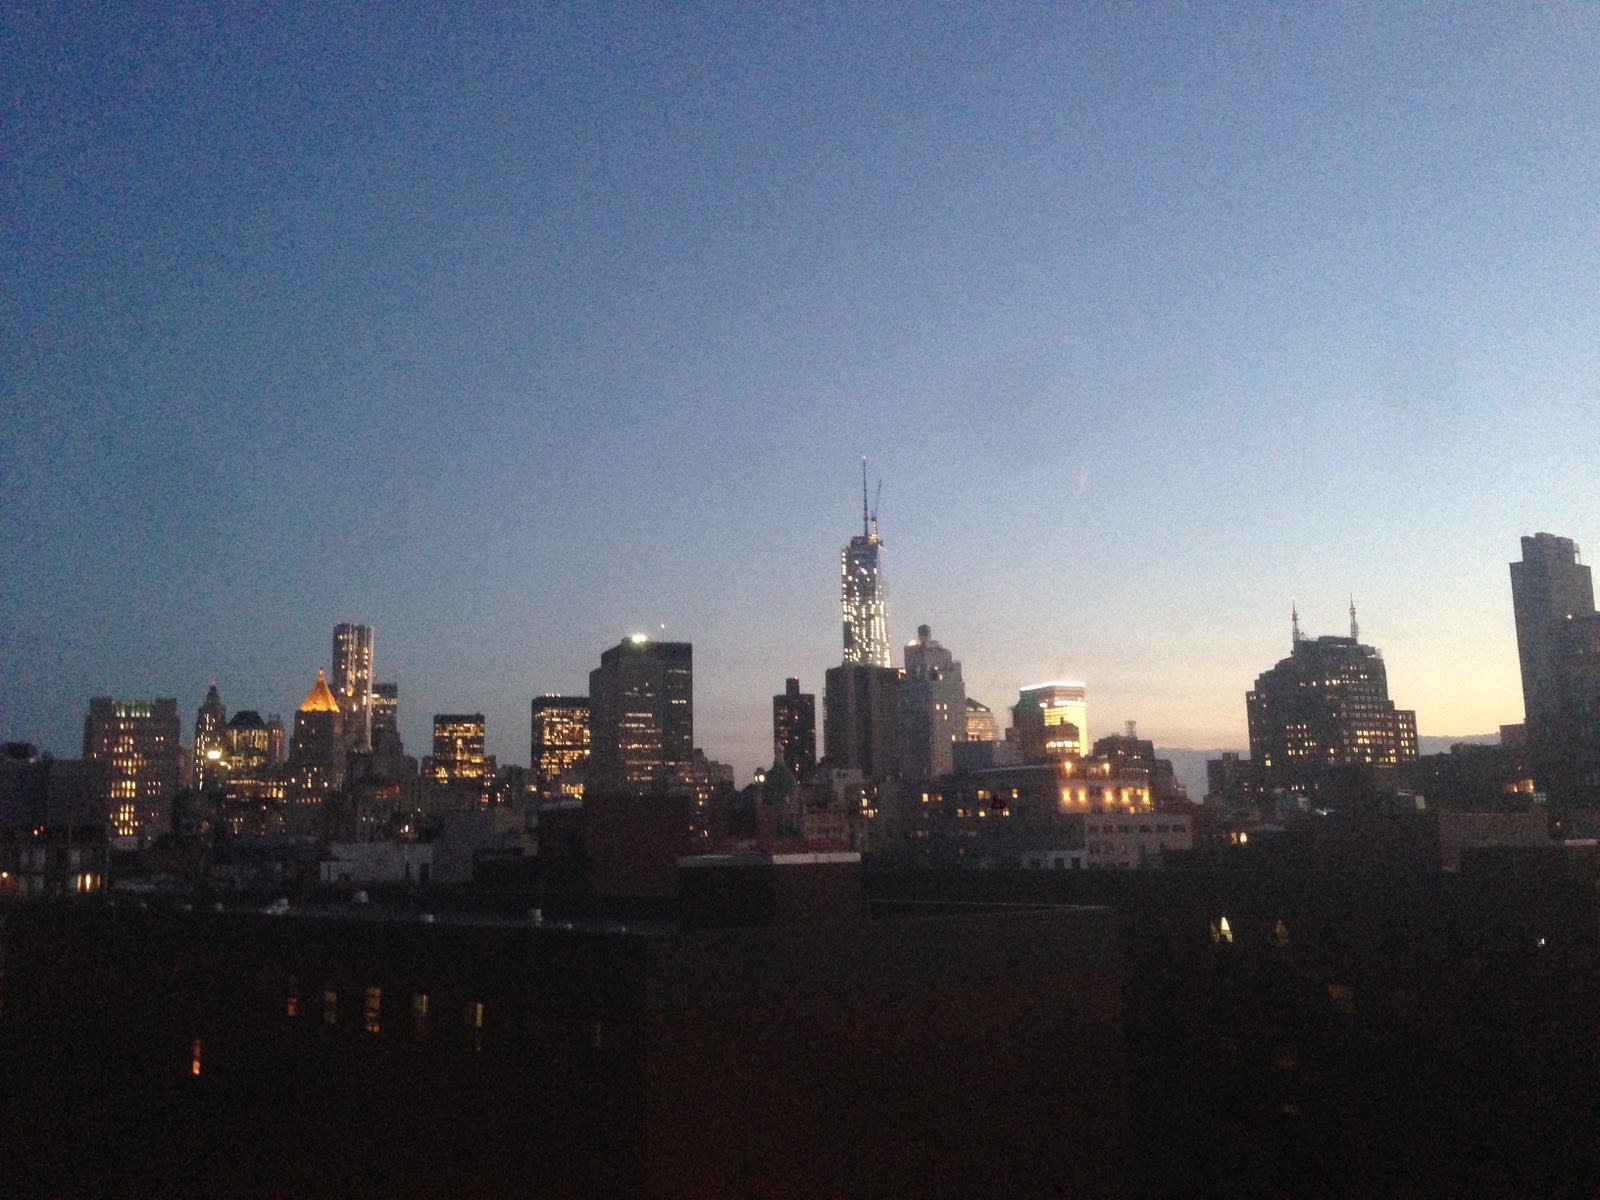 Evening panorama